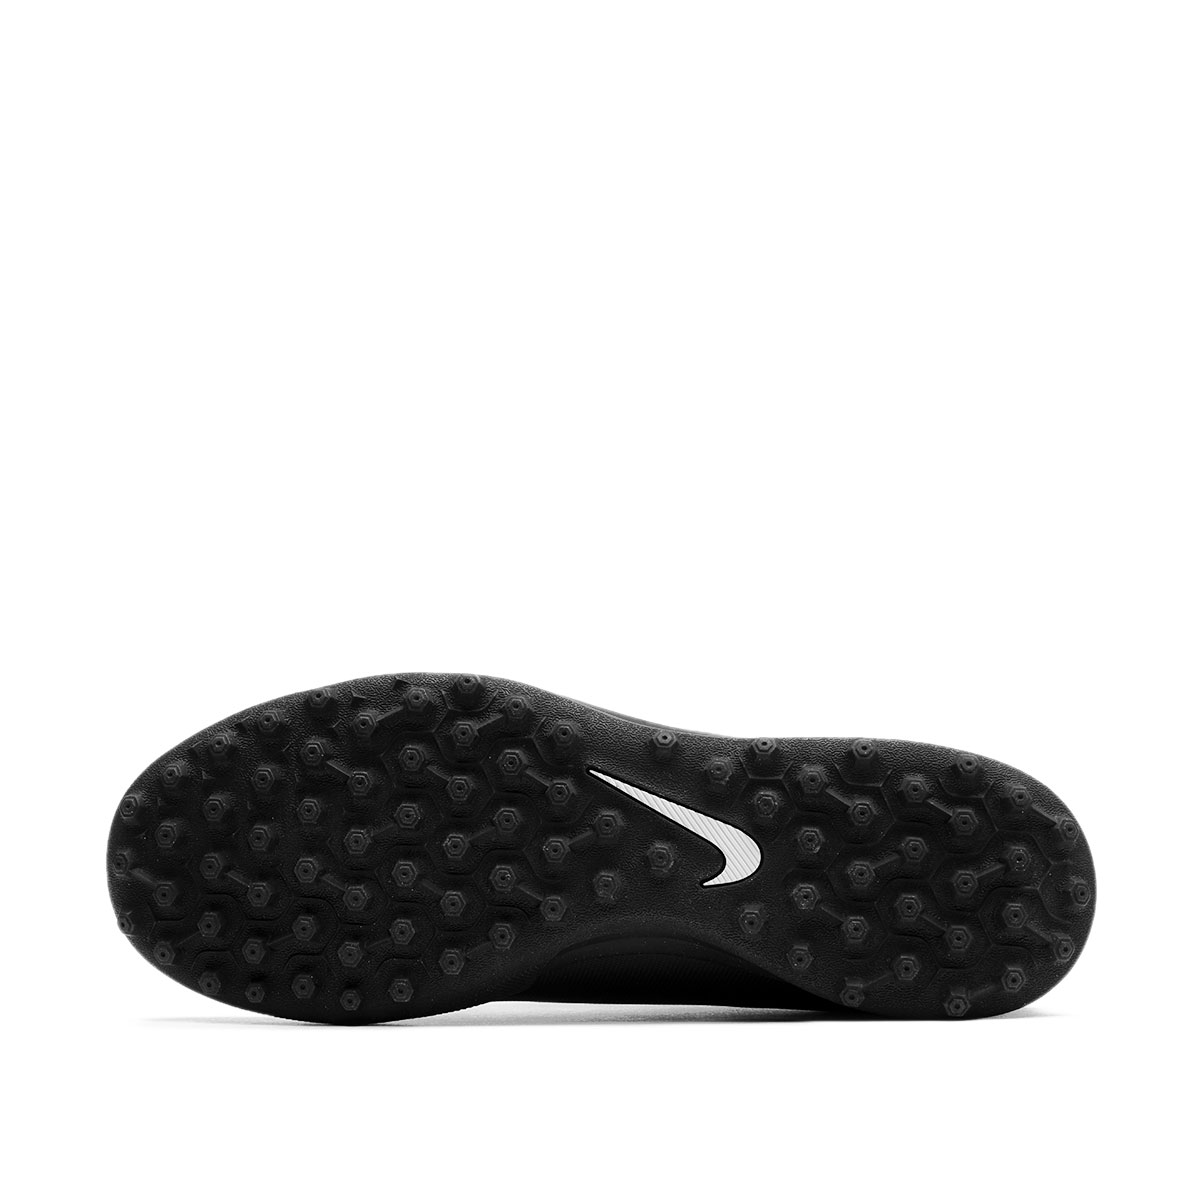 Nike Bravata 2 TF  844437-001